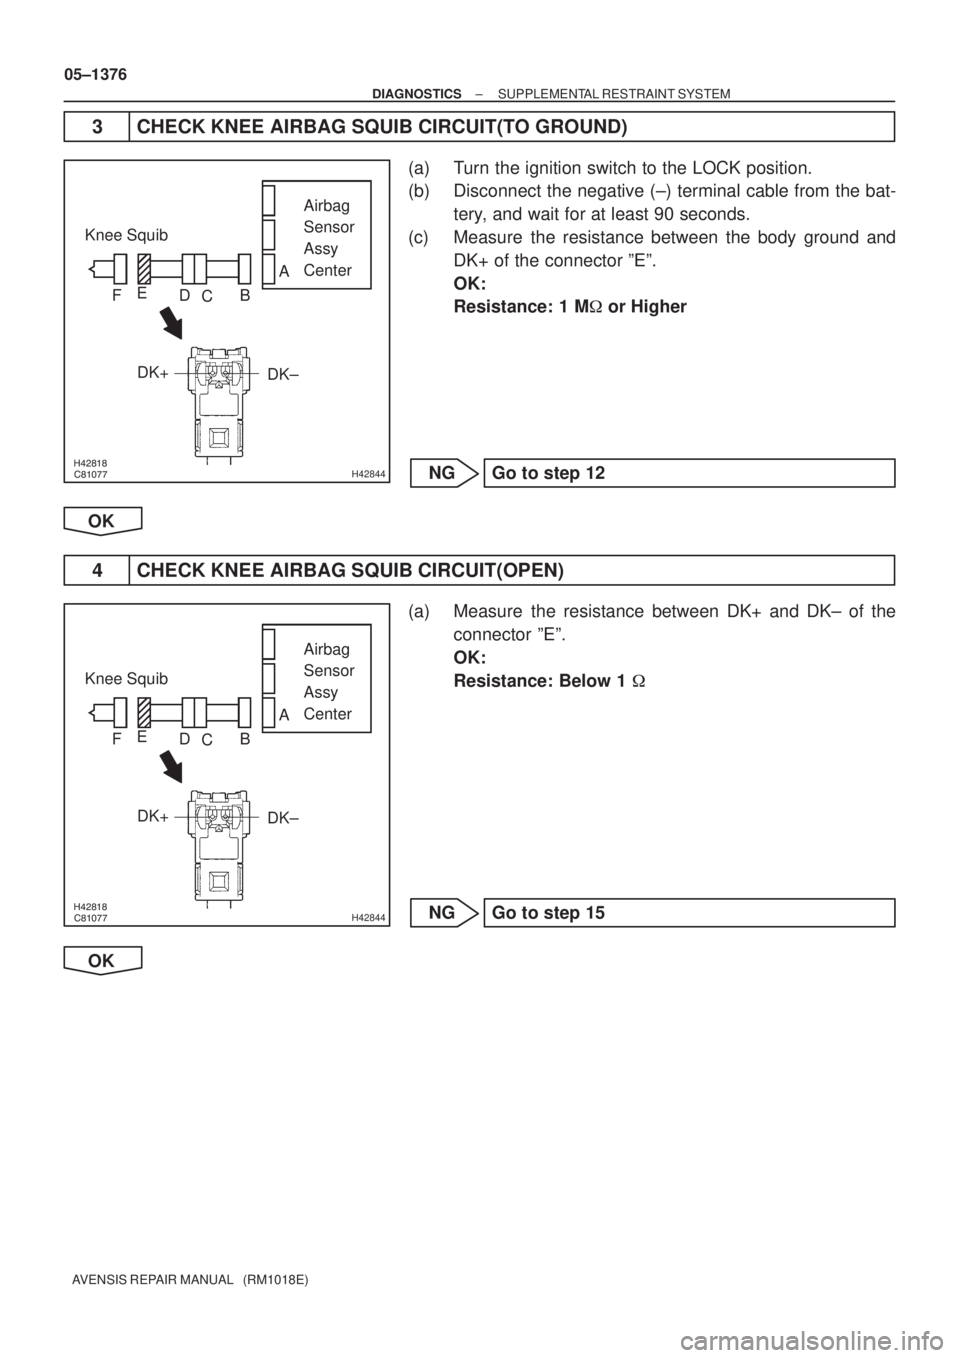 TOYOTA AVENSIS 2005  Service Repair Manual H42844
Airbag
Sensor 
Assy 
Center Knee Squib
DK± DK+
A
B
C D E
F
H42844
Airbag
Sensor 
Assy 
Center Knee Squib
DK± DK+
A
B
C D E
F
05±1376
± DIAGNOSTICSSUPPLEMENTAL RESTRA